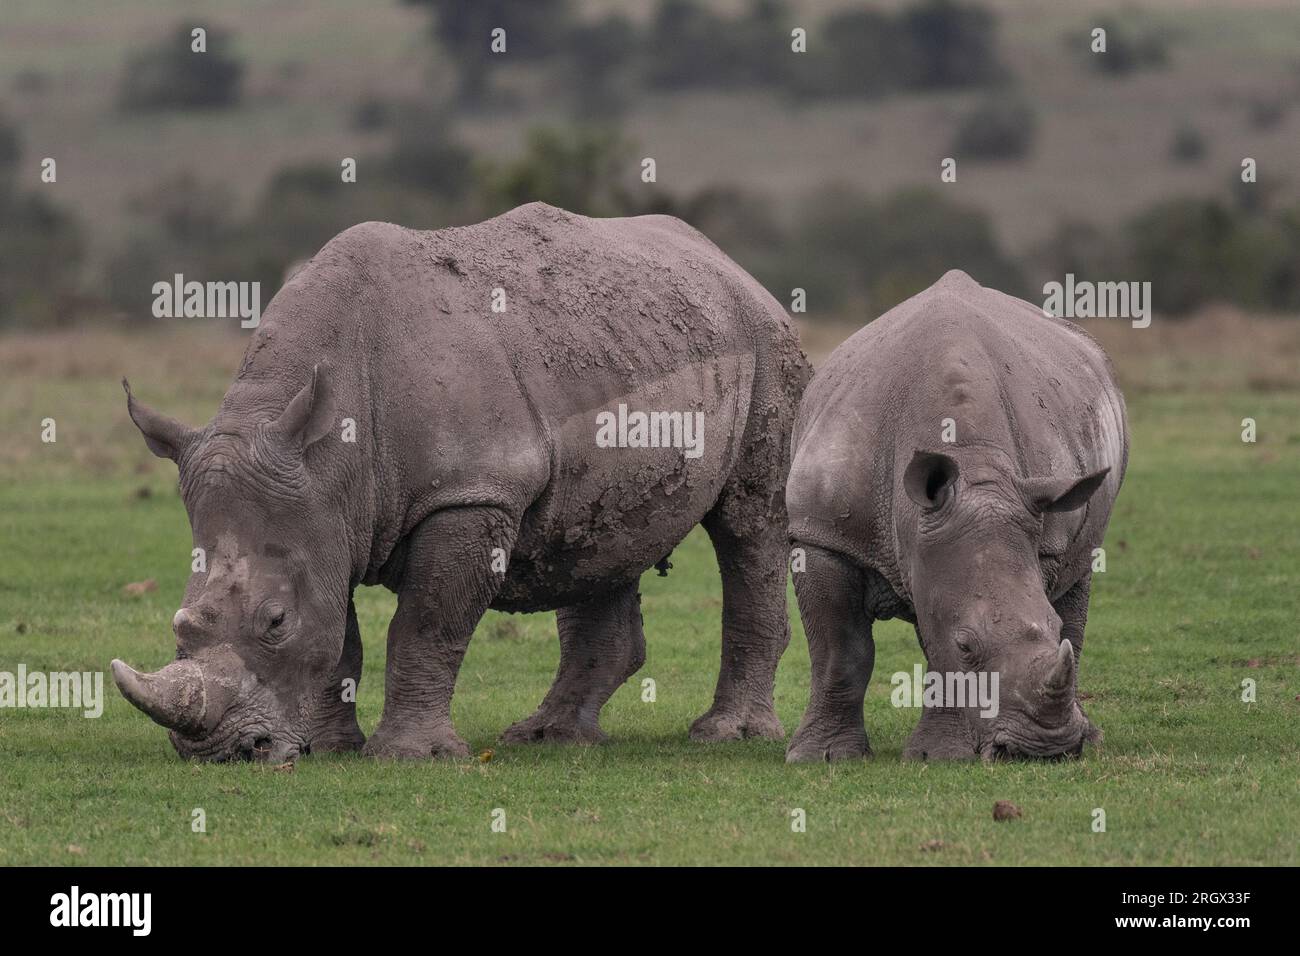 Rhinocéros blanc du Sud, Ceratotherium simum simum, Rhinocerotidae, OL Pejeta conservation Area, Kenya, Afrique Banque D'Images